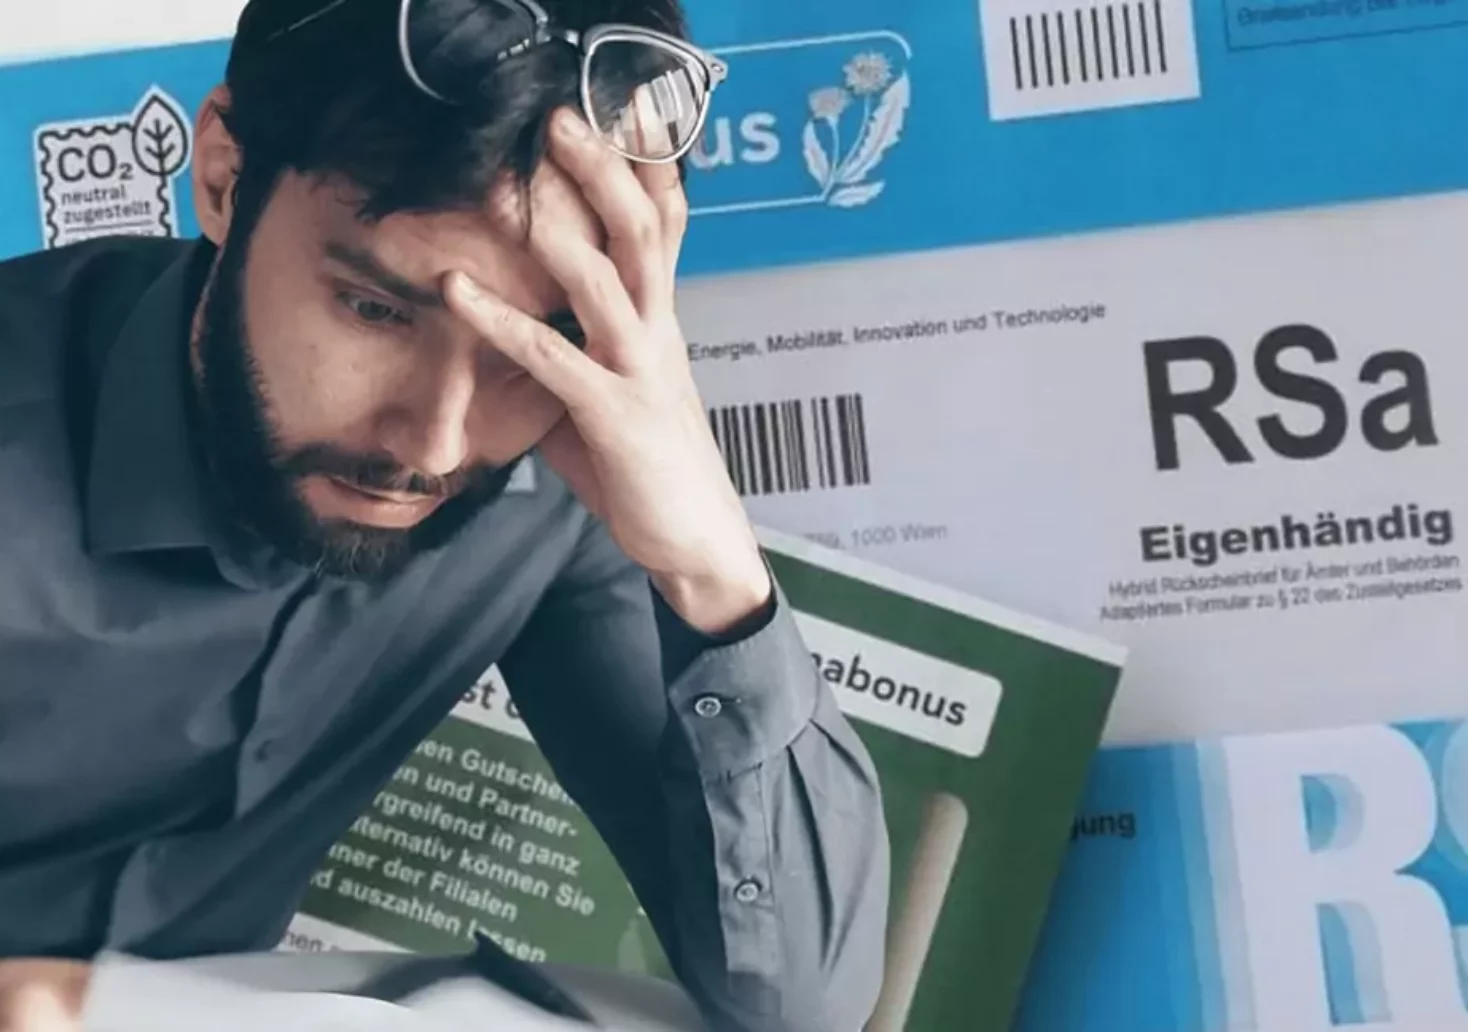 Bildmontage auf 5min.at zeigt einen verzweifelten Mann und ein Kuvert des österreichischen Klimabonus.